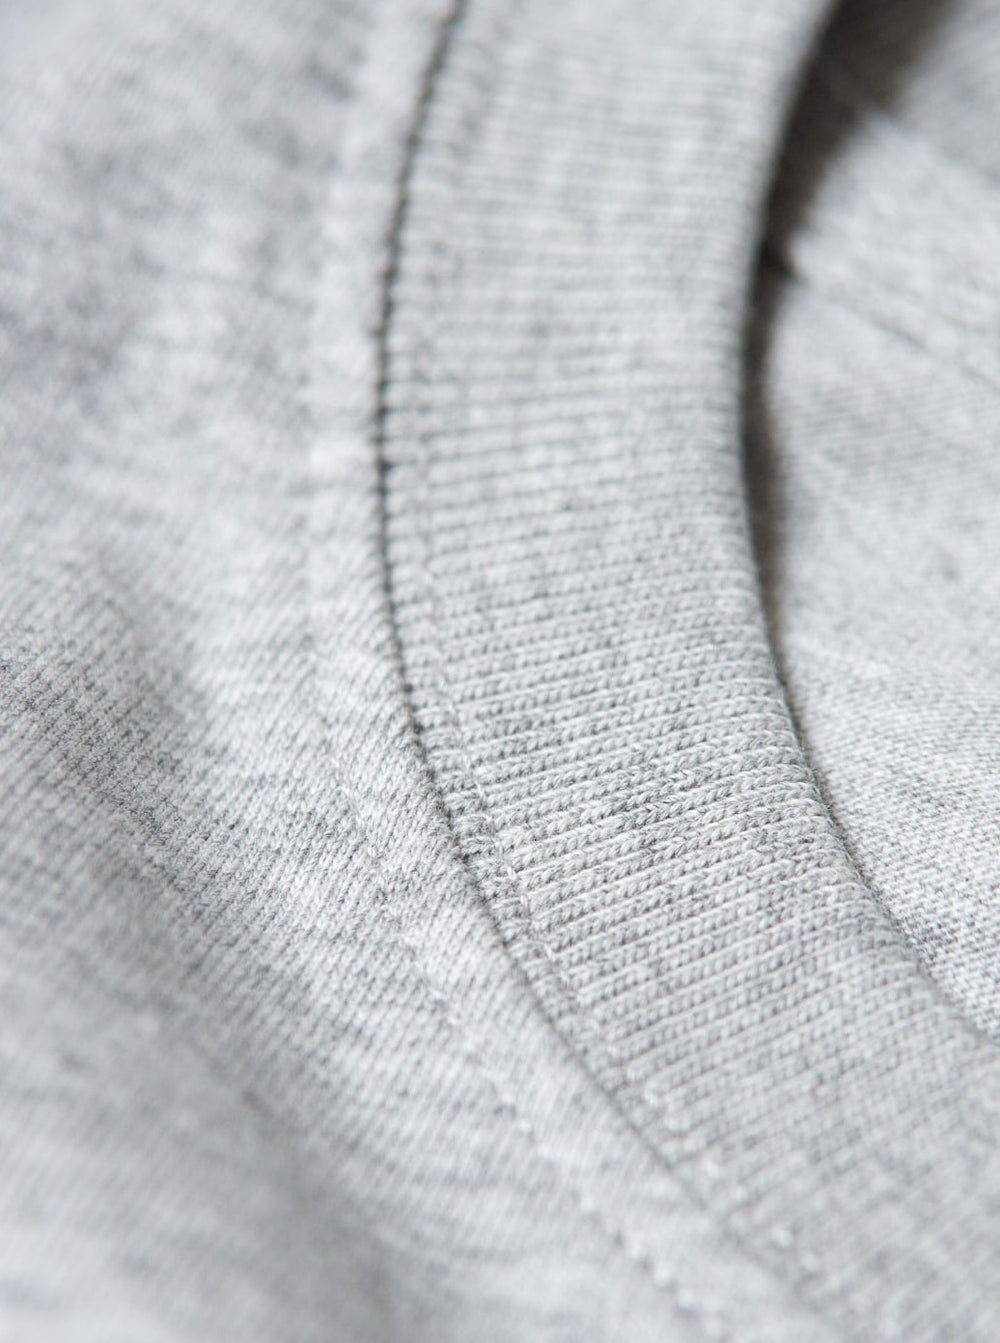 Nachhaltiges Unisex Basic T-Shirt von FUXBAU aus 100% GOTS zertifizierter Biobaumwolle in grau, spare im Eco Pack.